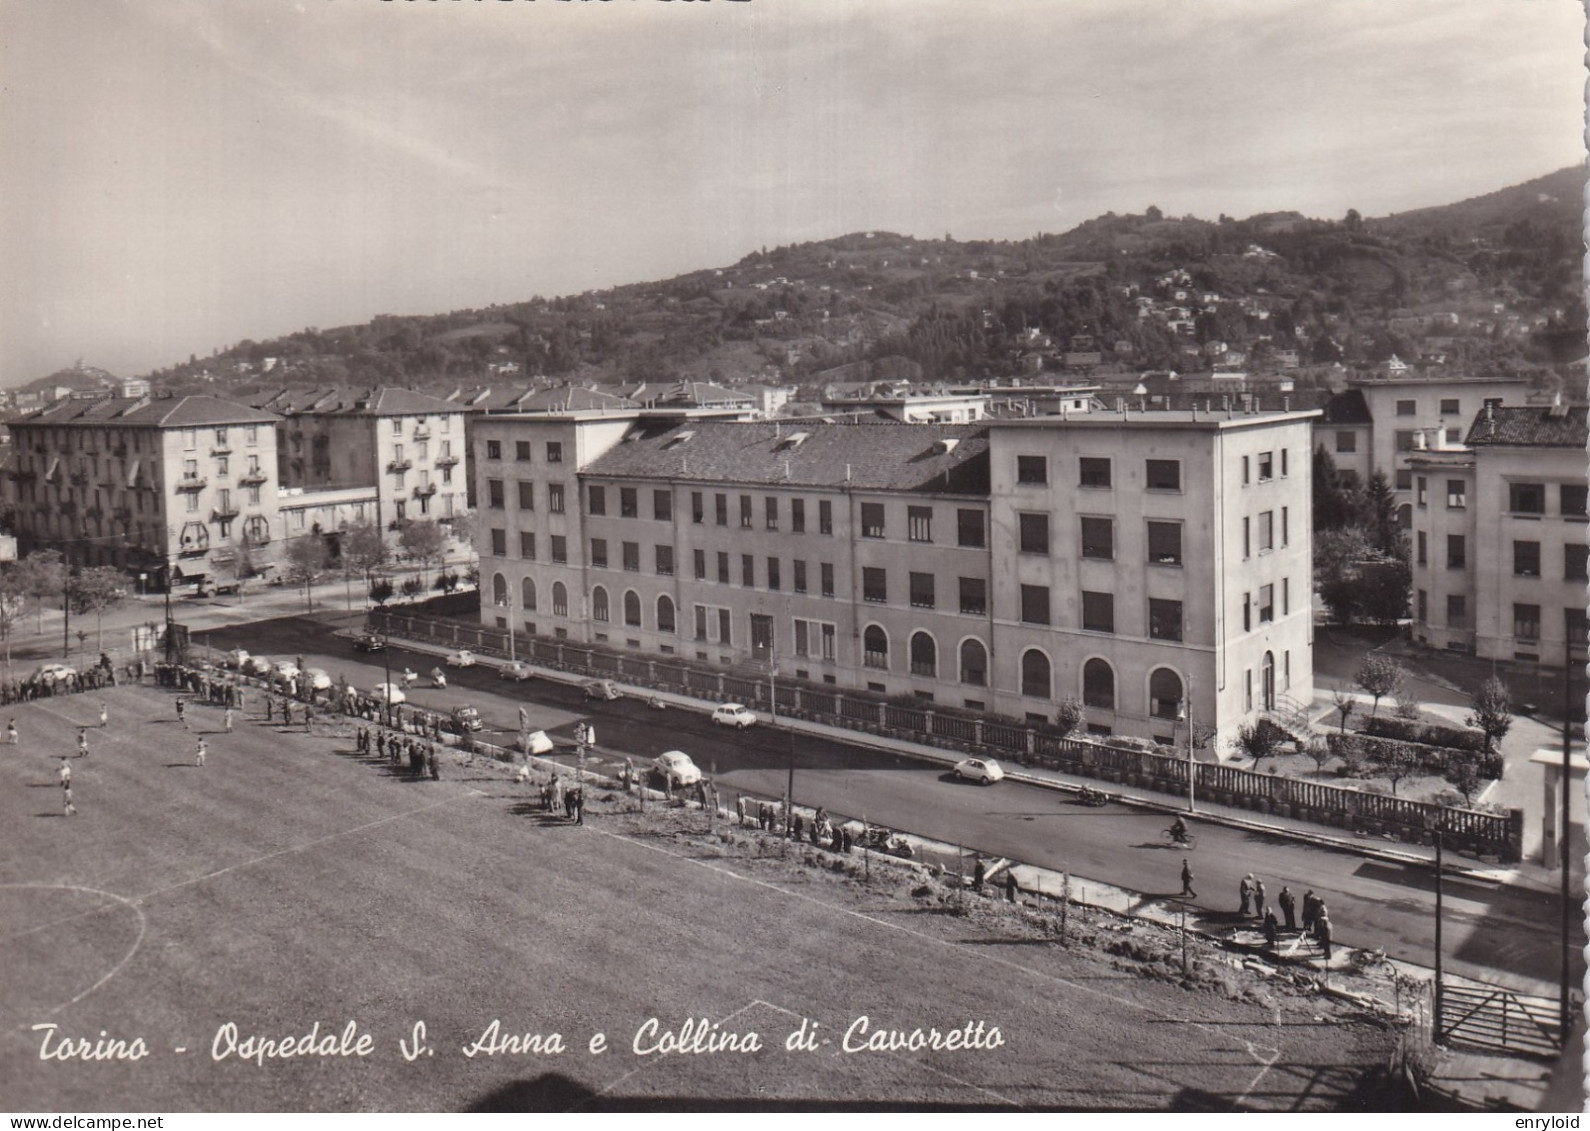 Torino Ospedale Sant'Anna E Collina Di Cavoretto - Andere Monumente & Gebäude